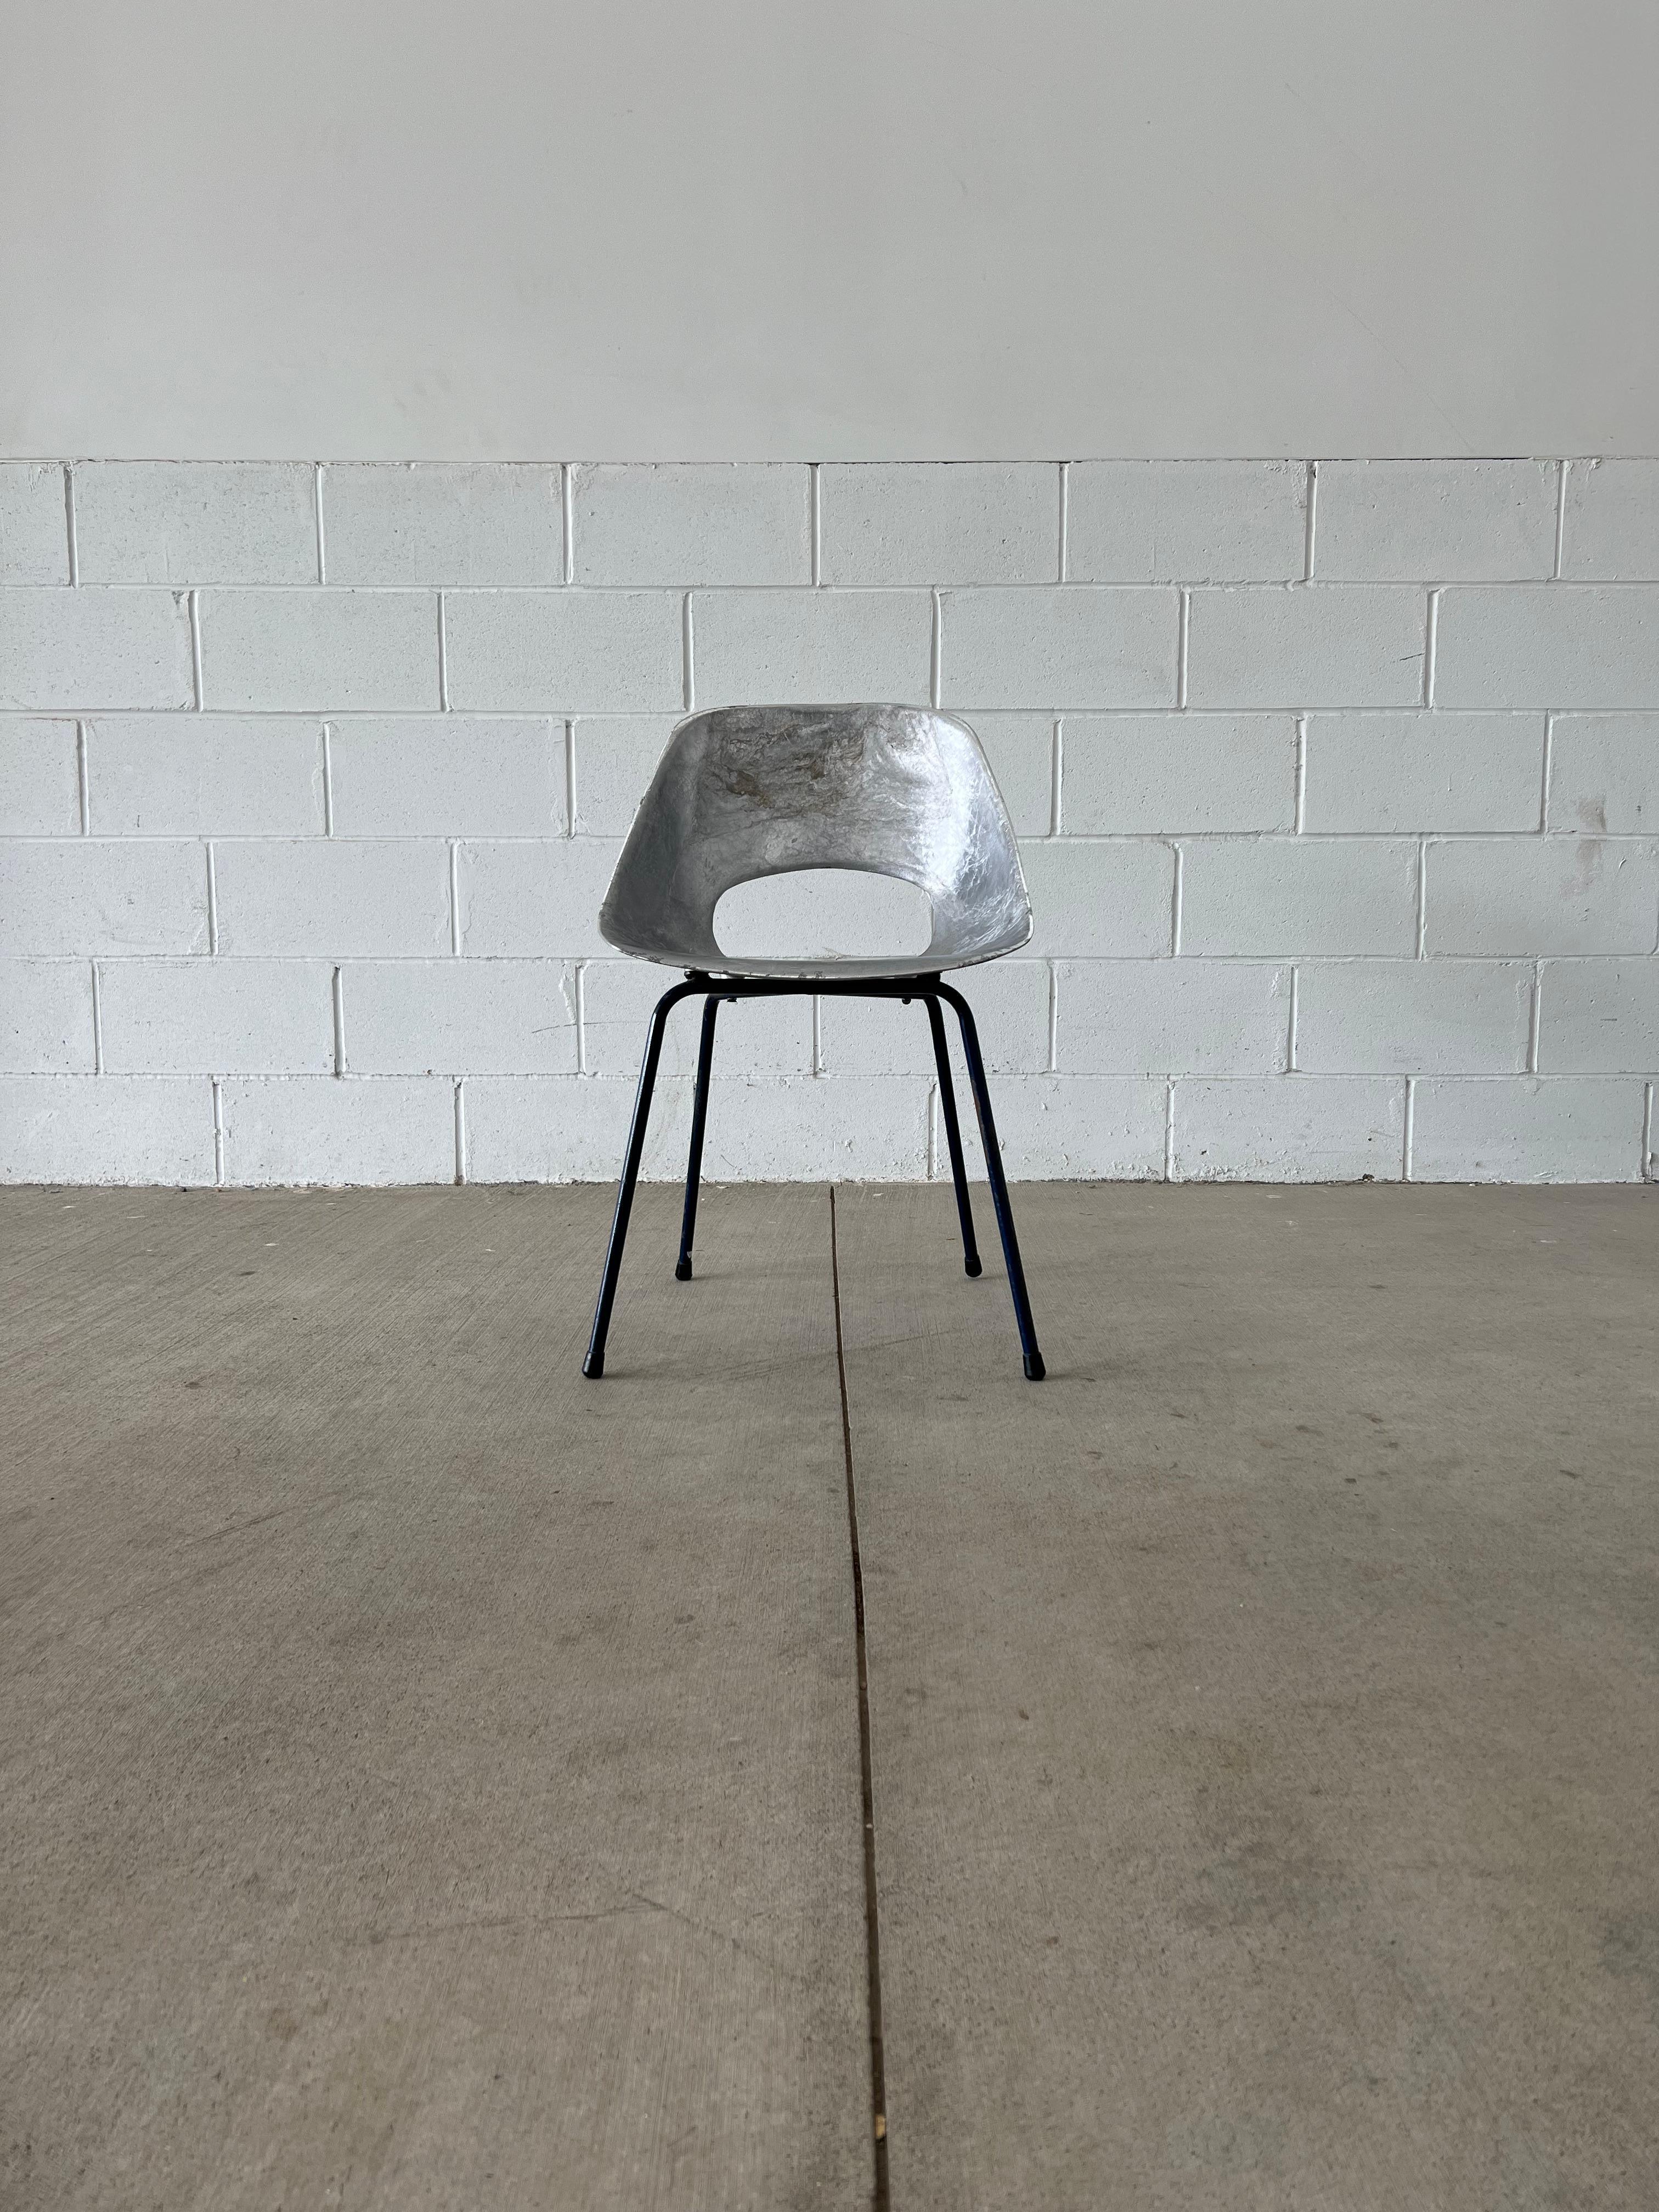 Das Werk von Pierre Guariche erfreut sich zunehmender Beliebtheit, da Neuauflagen sein großartiges Werk ans Licht bringen. Der Tulipe Chair ist ein solches Stück, das populär geworden ist, obwohl es anders verwendet wird als ursprünglich vorgesehen.